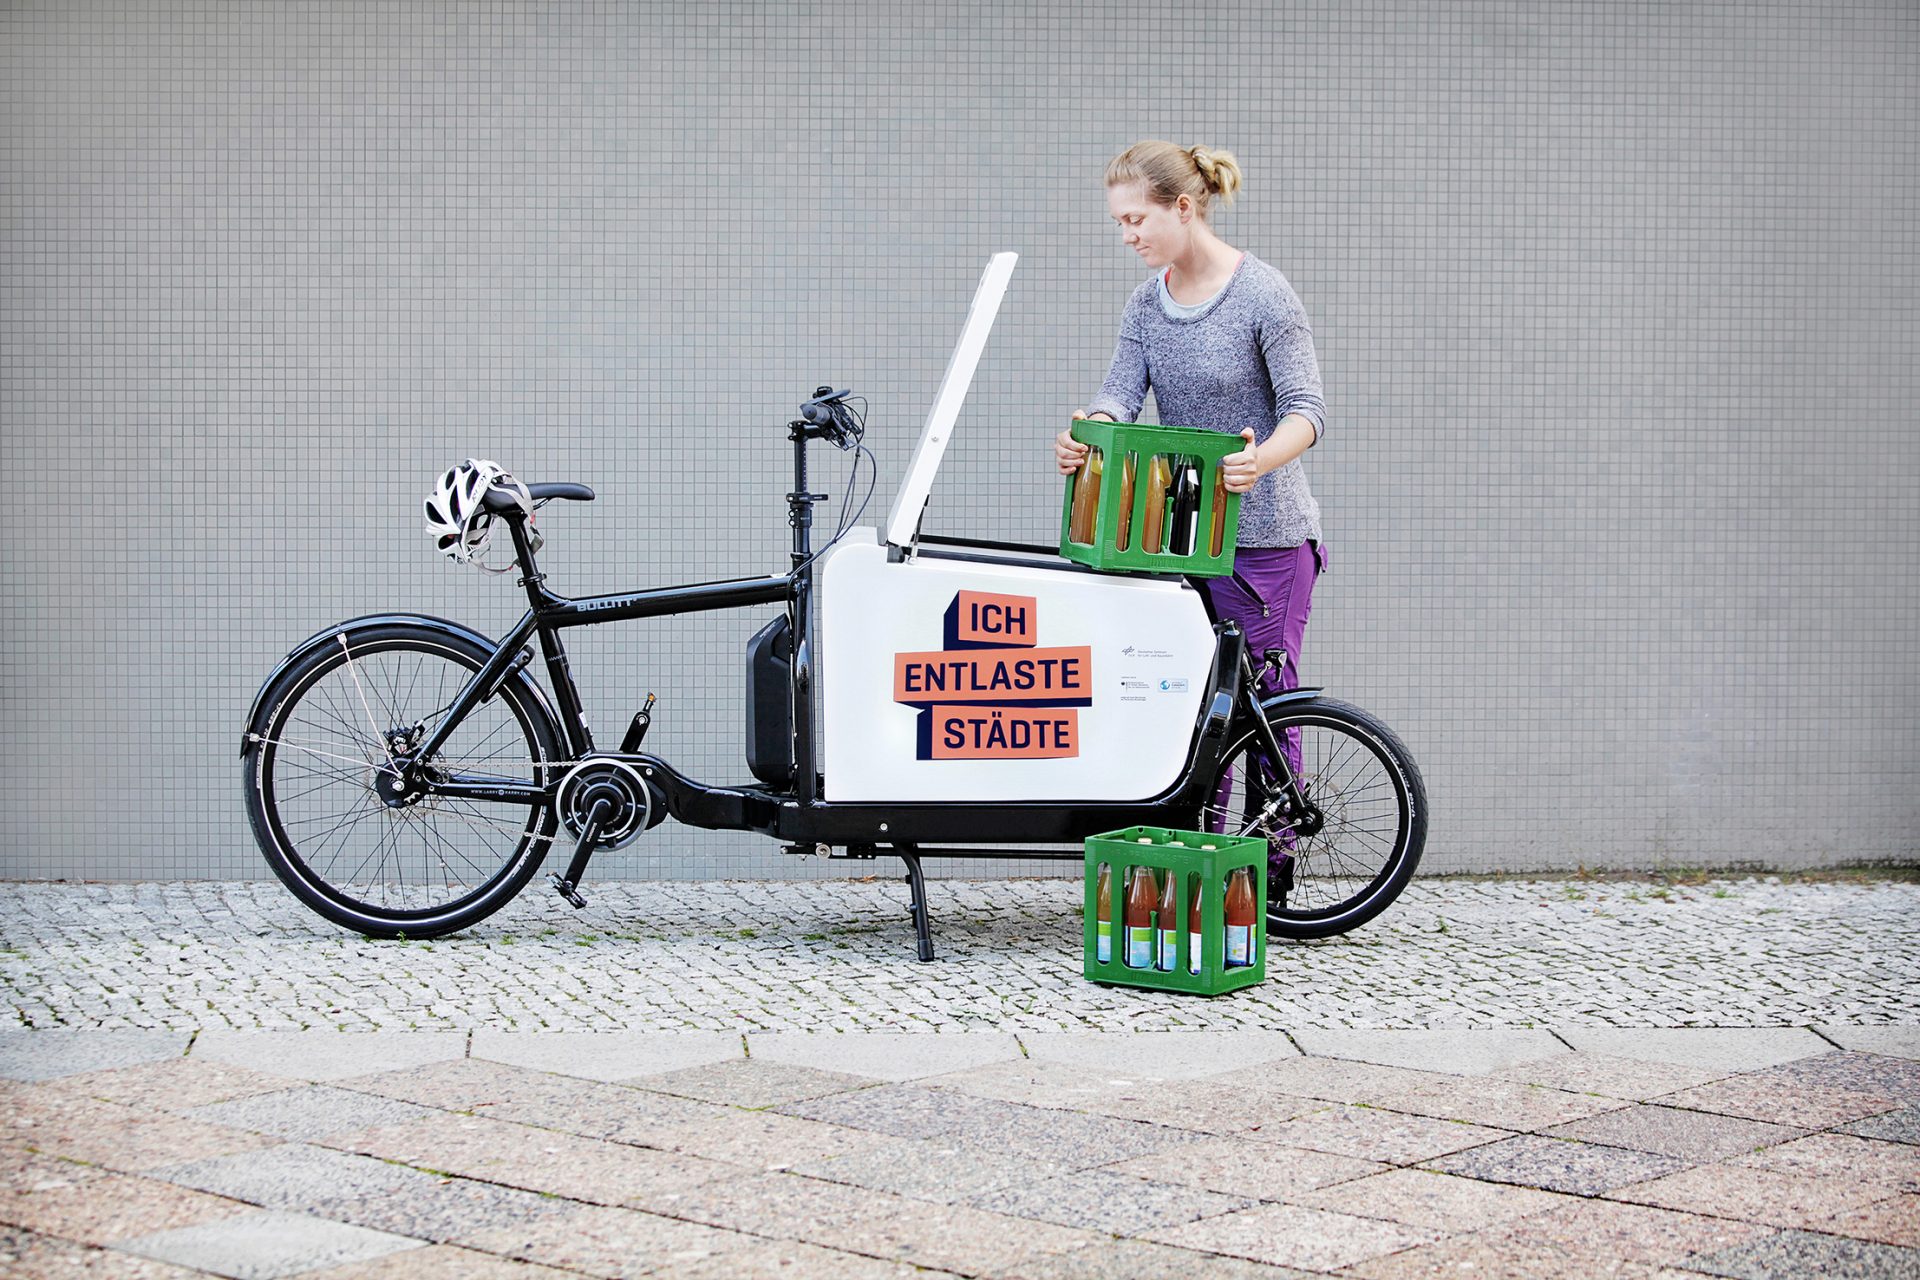 Une femme charge des caisses de boissons sur un vélo-cargo. Sur le vélo, il y a 